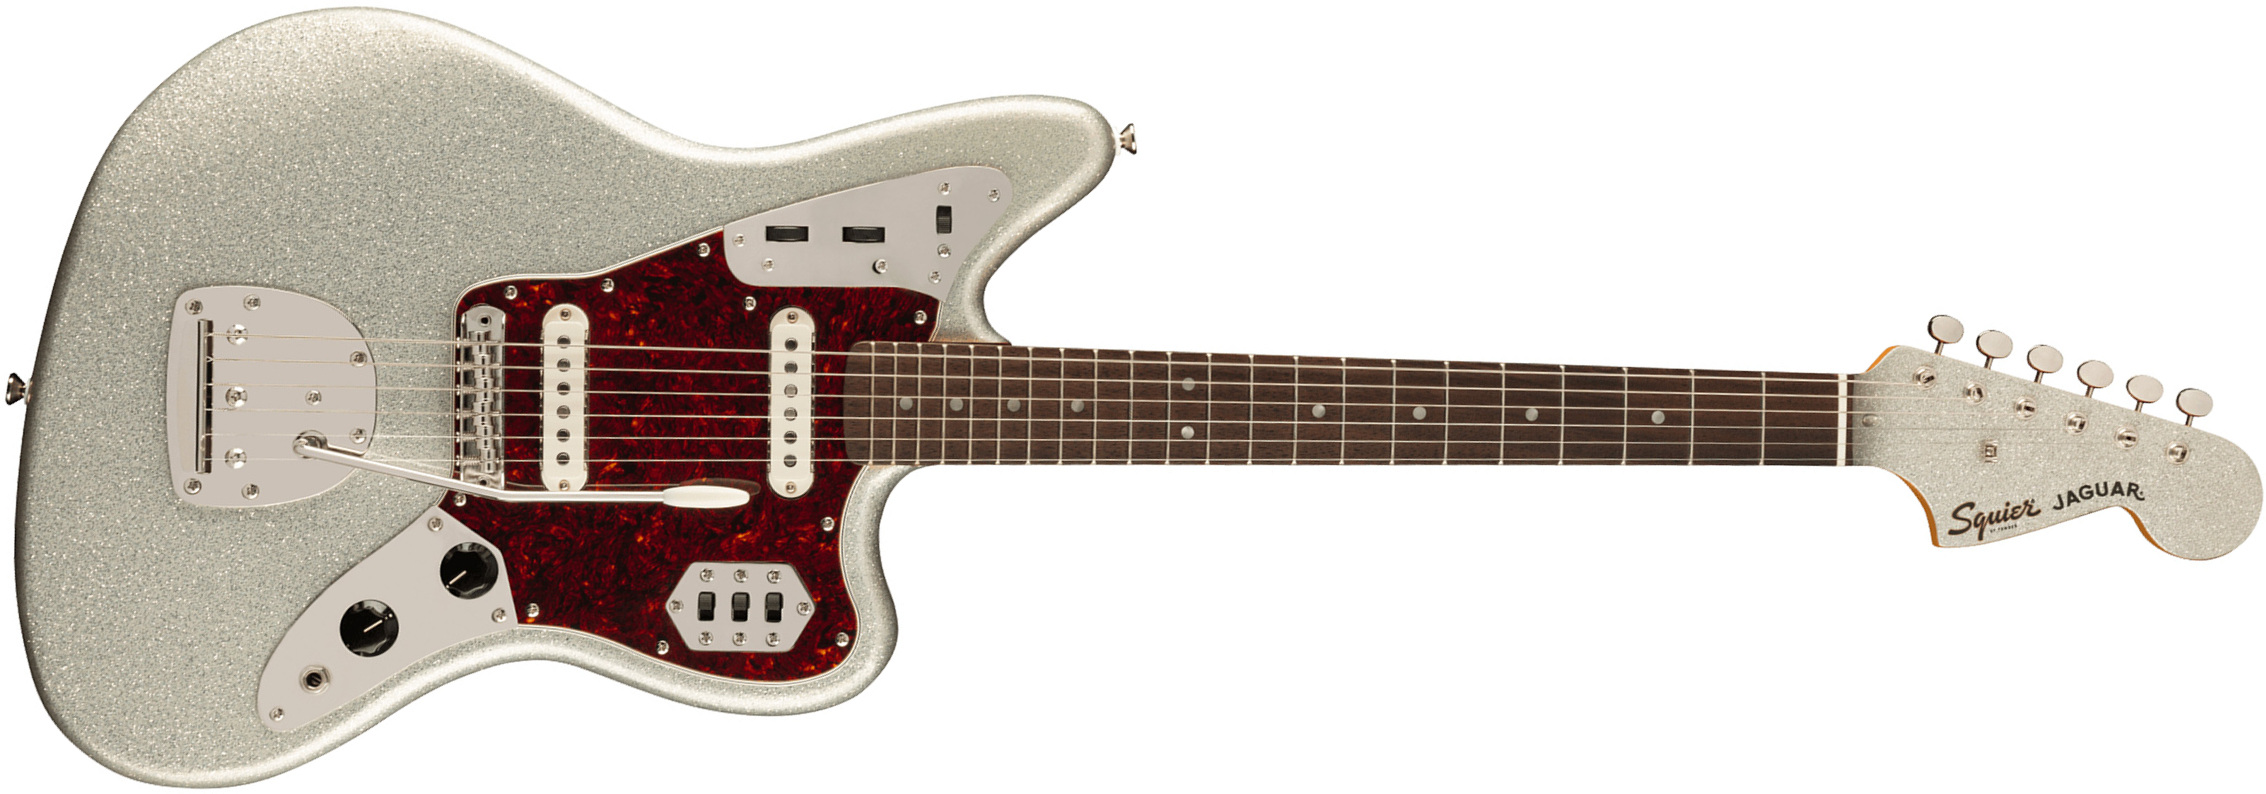 Squier Jaguar 60s Classic Vibe Fsr Ltd 2s Trem Lau - Silver Sparkle Matching Headstock - Retro rock electric guitar - Main picture